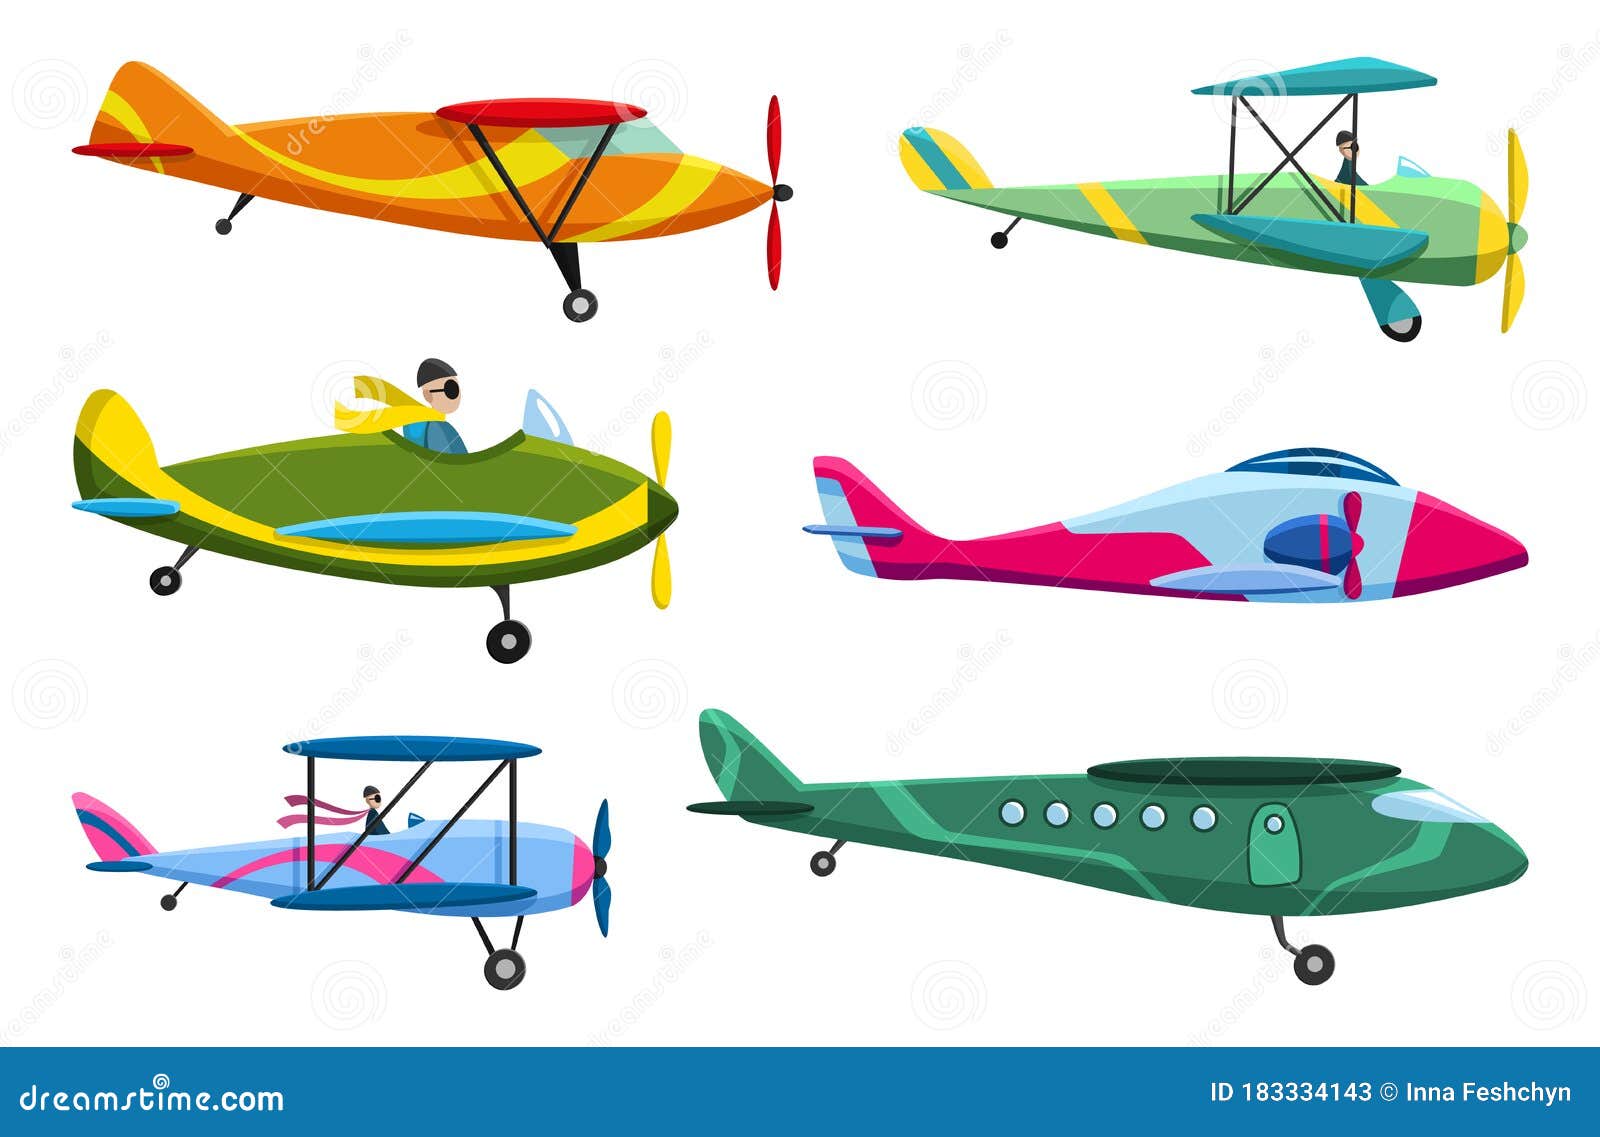 Aircraft Airframe